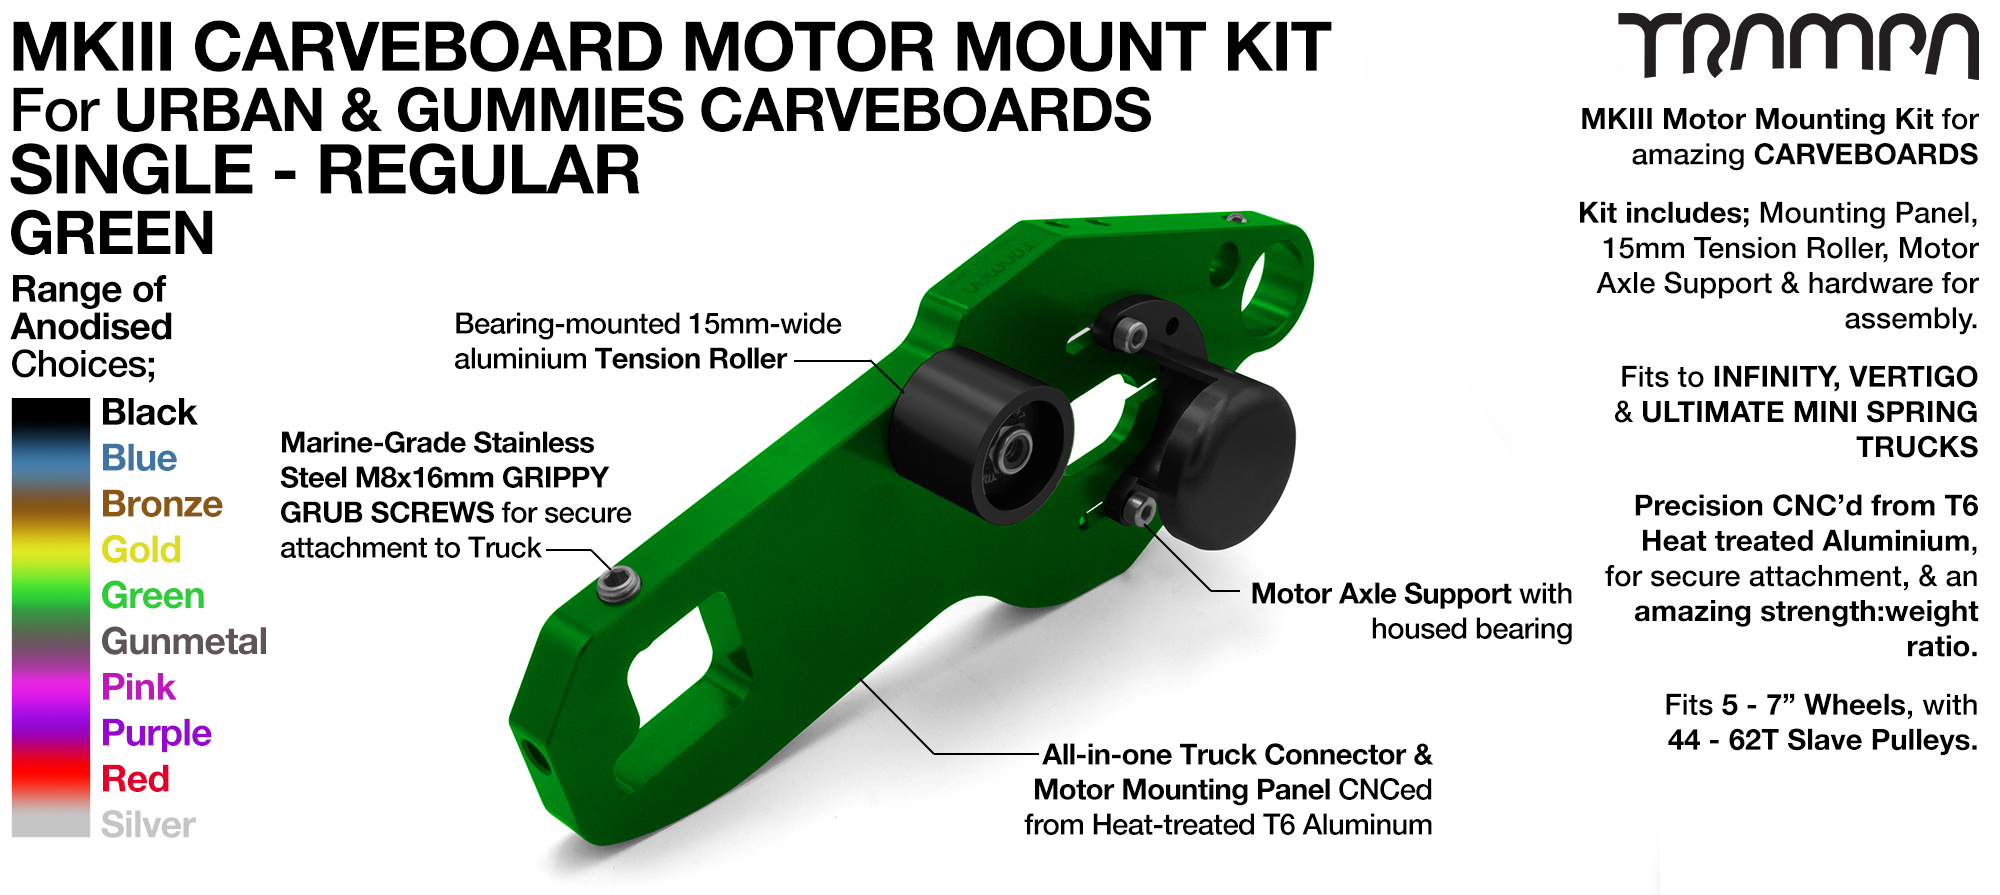 Mk III CARVE BOARD Motor Mount Kit - SINGLE GREEN